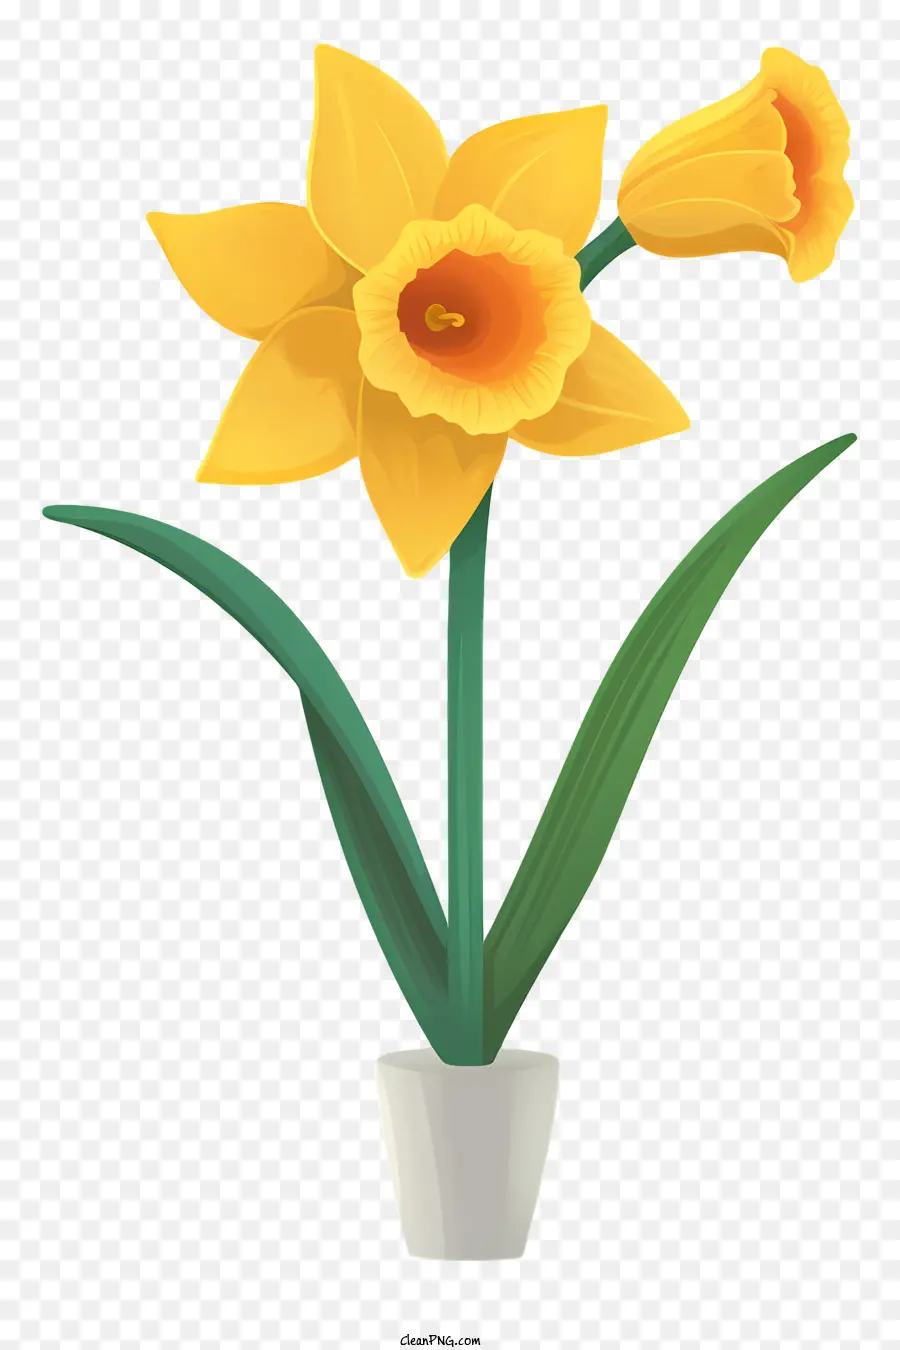 hoa màu vàng - Hoa Daffodil màu vàng trong nồi trắng trên nền đen